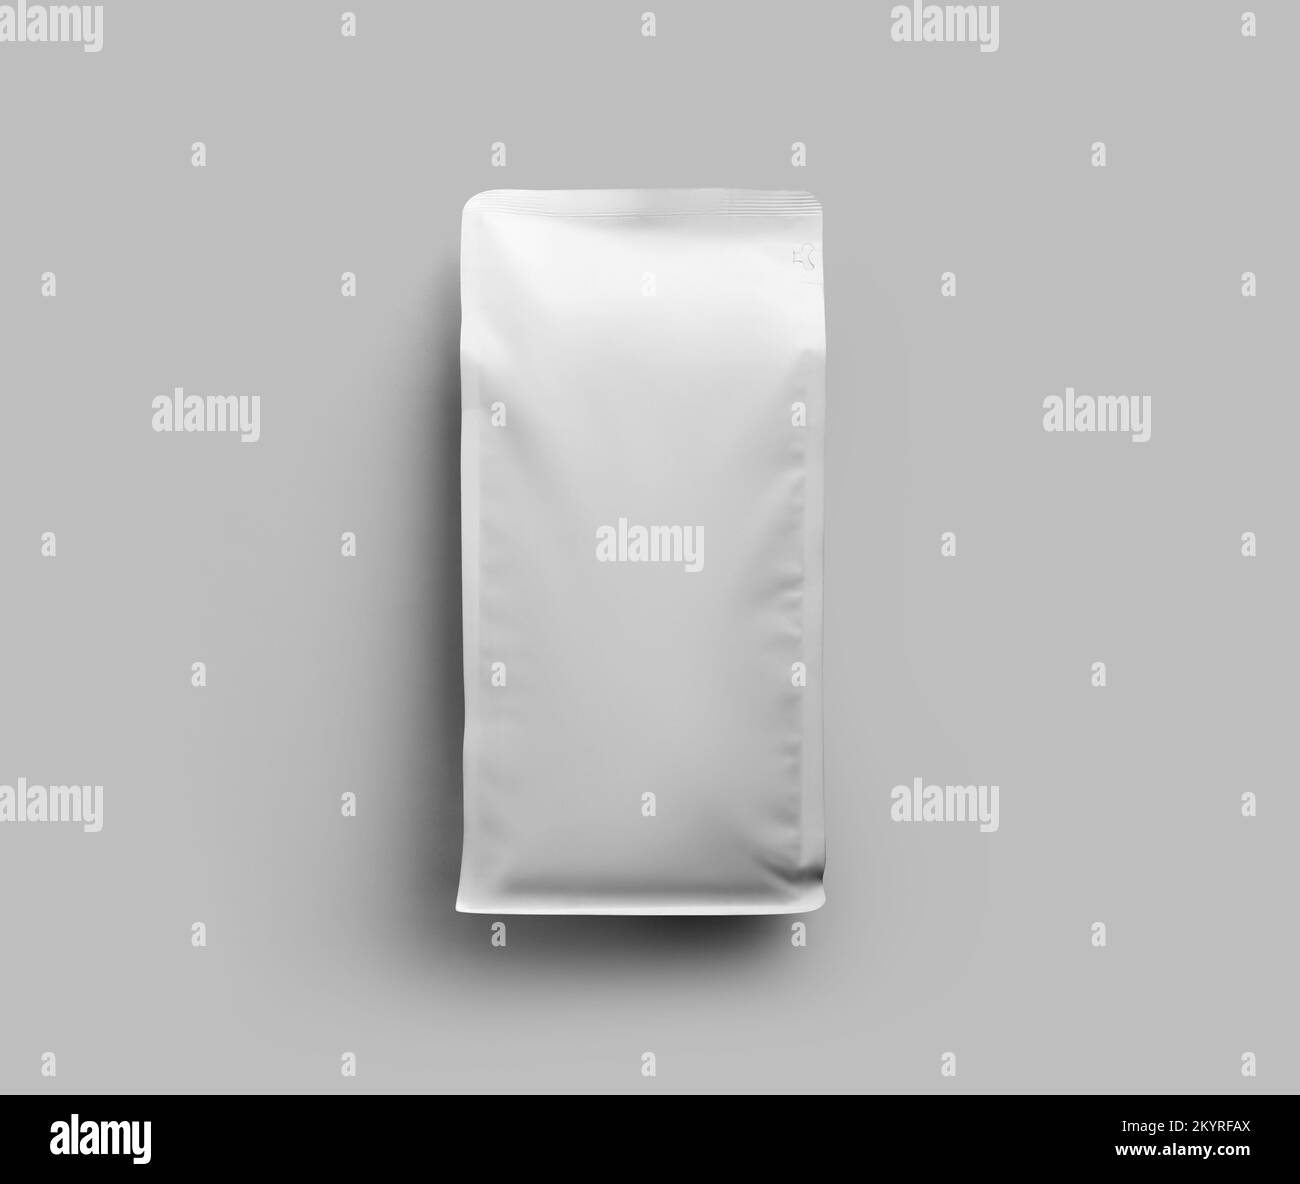 Modell der weißen Zwickelverpackung für Kaffeebohnen, Kaffeebeutel für Präsentation, Design, Muster. Doypack-Vorlage für losen Tee, isoliert an einer Wand Stockfoto